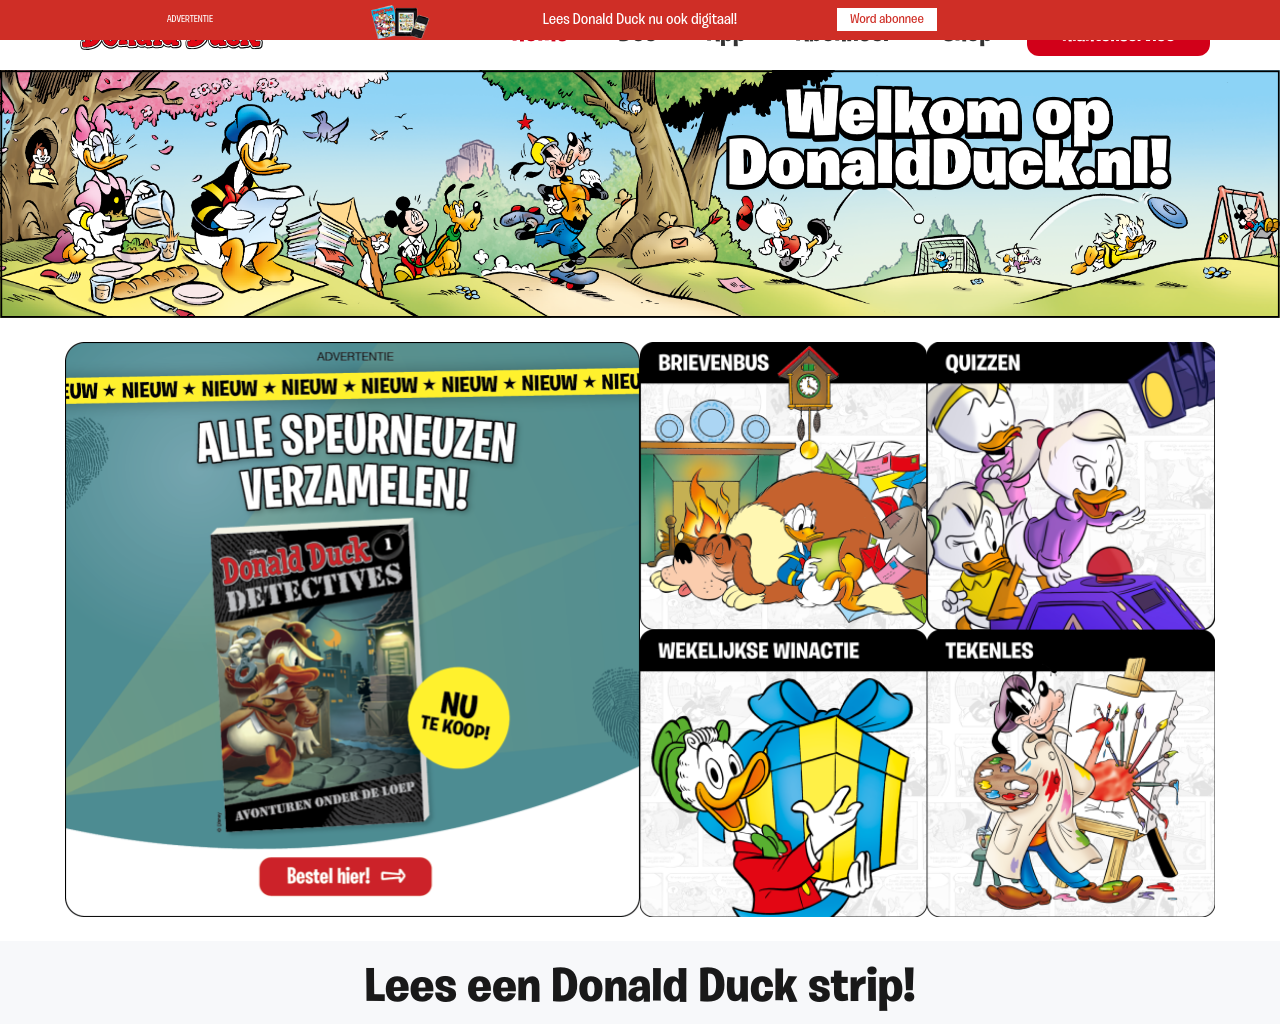 donaldduck.nl